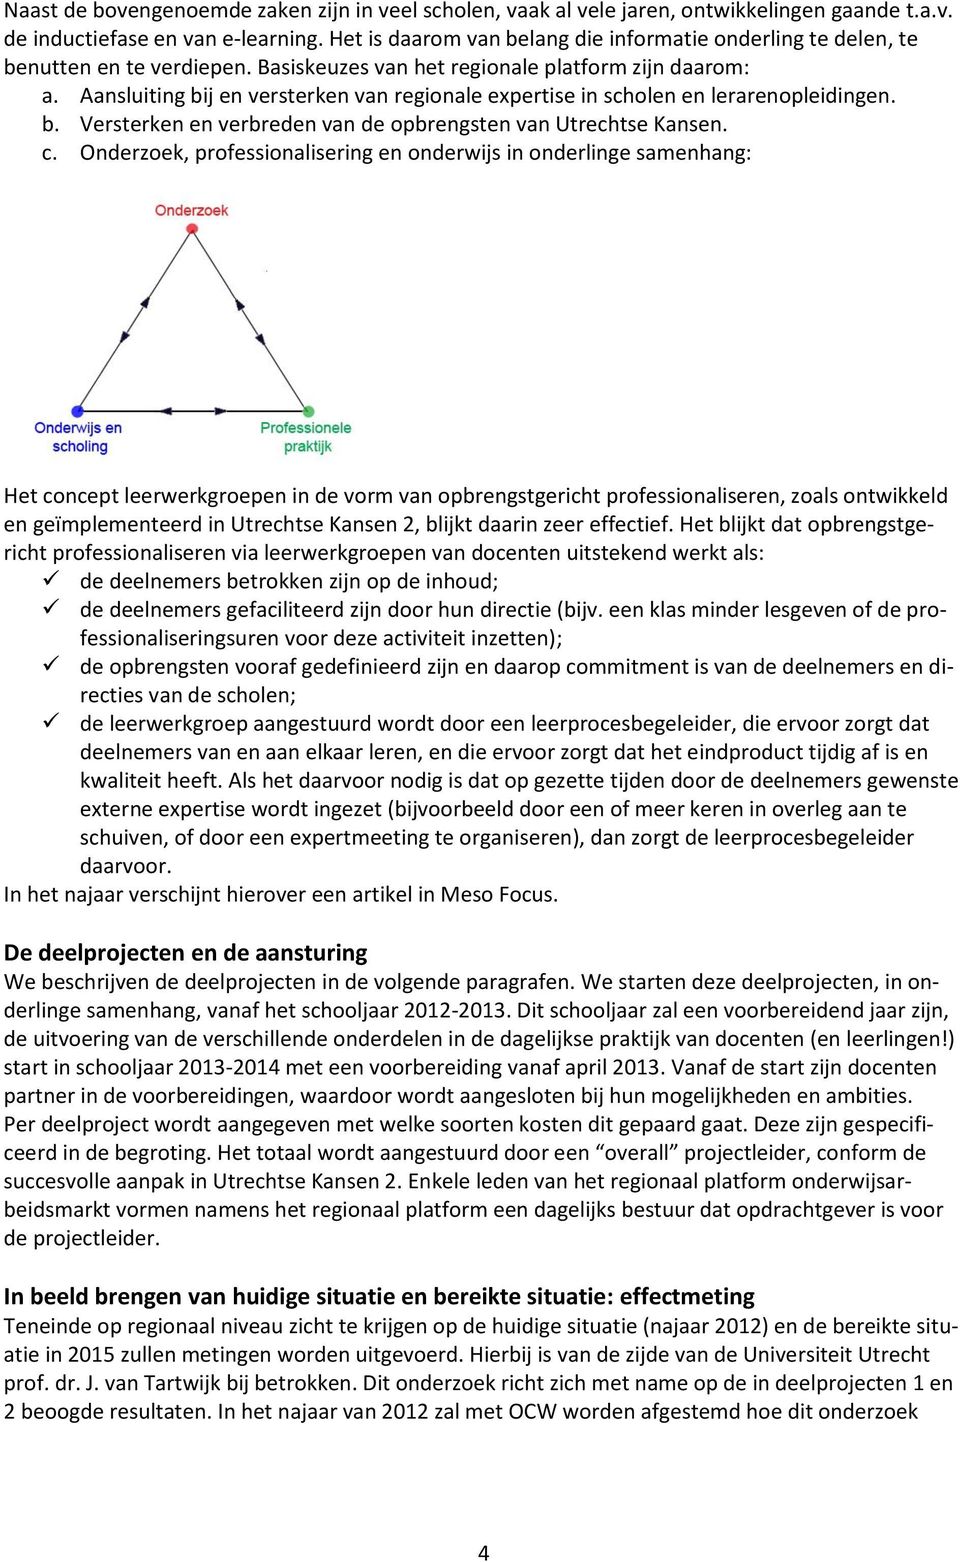 Aansluiting bij en versterken van regionale expertise in scholen en lerarenopleidingen. b. Versterken en verbreden van de opbrengsten van Utrechtse Kansen. c.